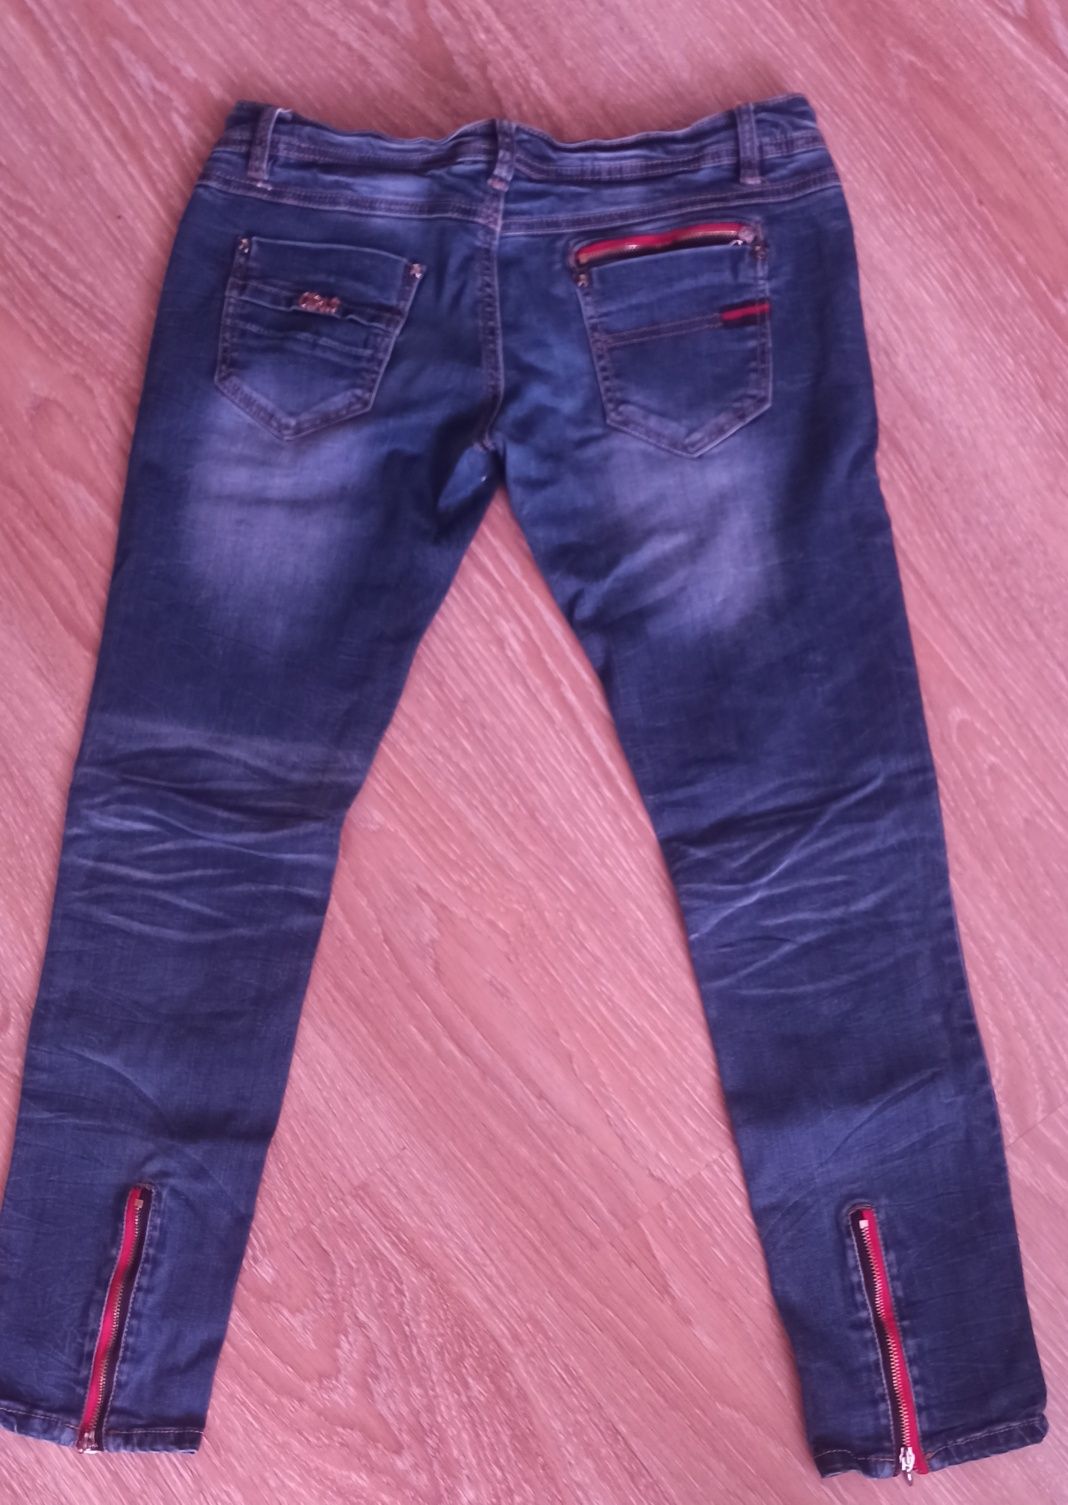 Жіночі джинси, джінси 46-48